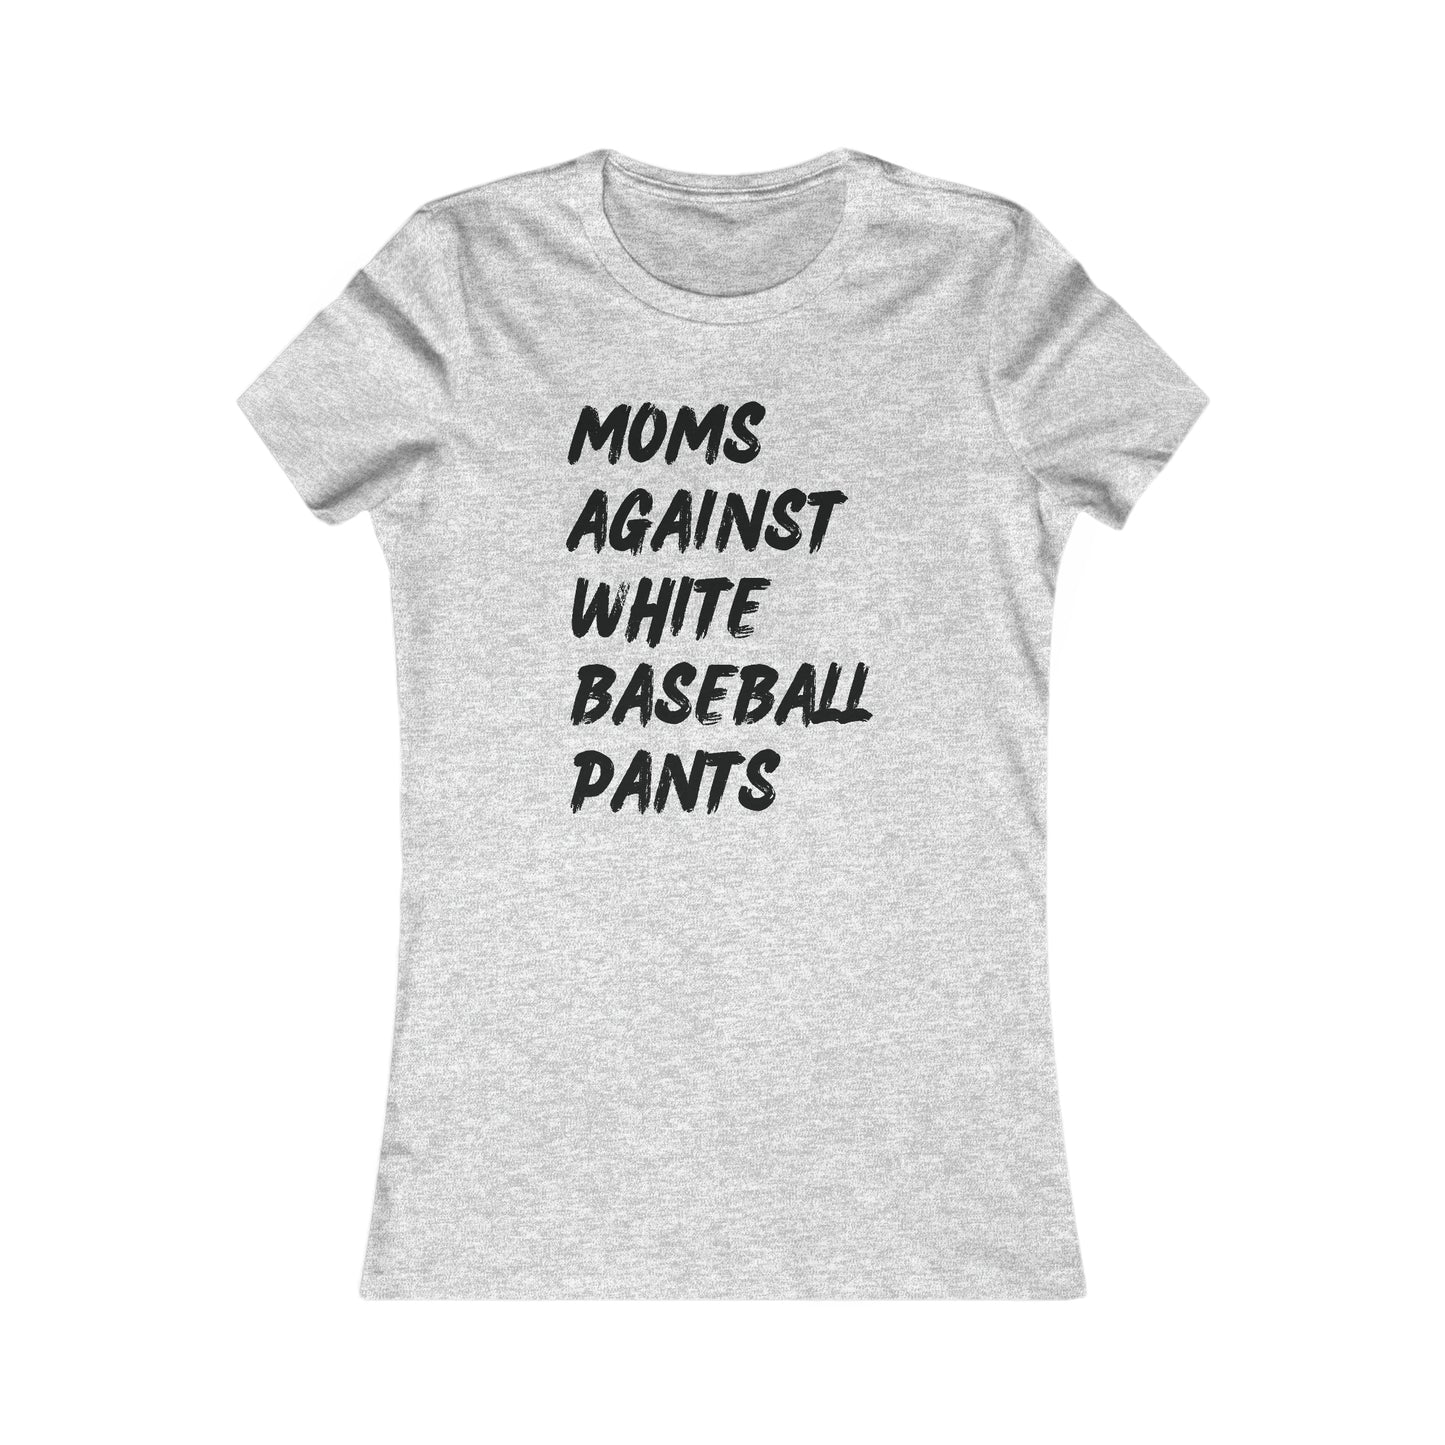 Moms Against White Baseball Pants - Women's Favorite Tee